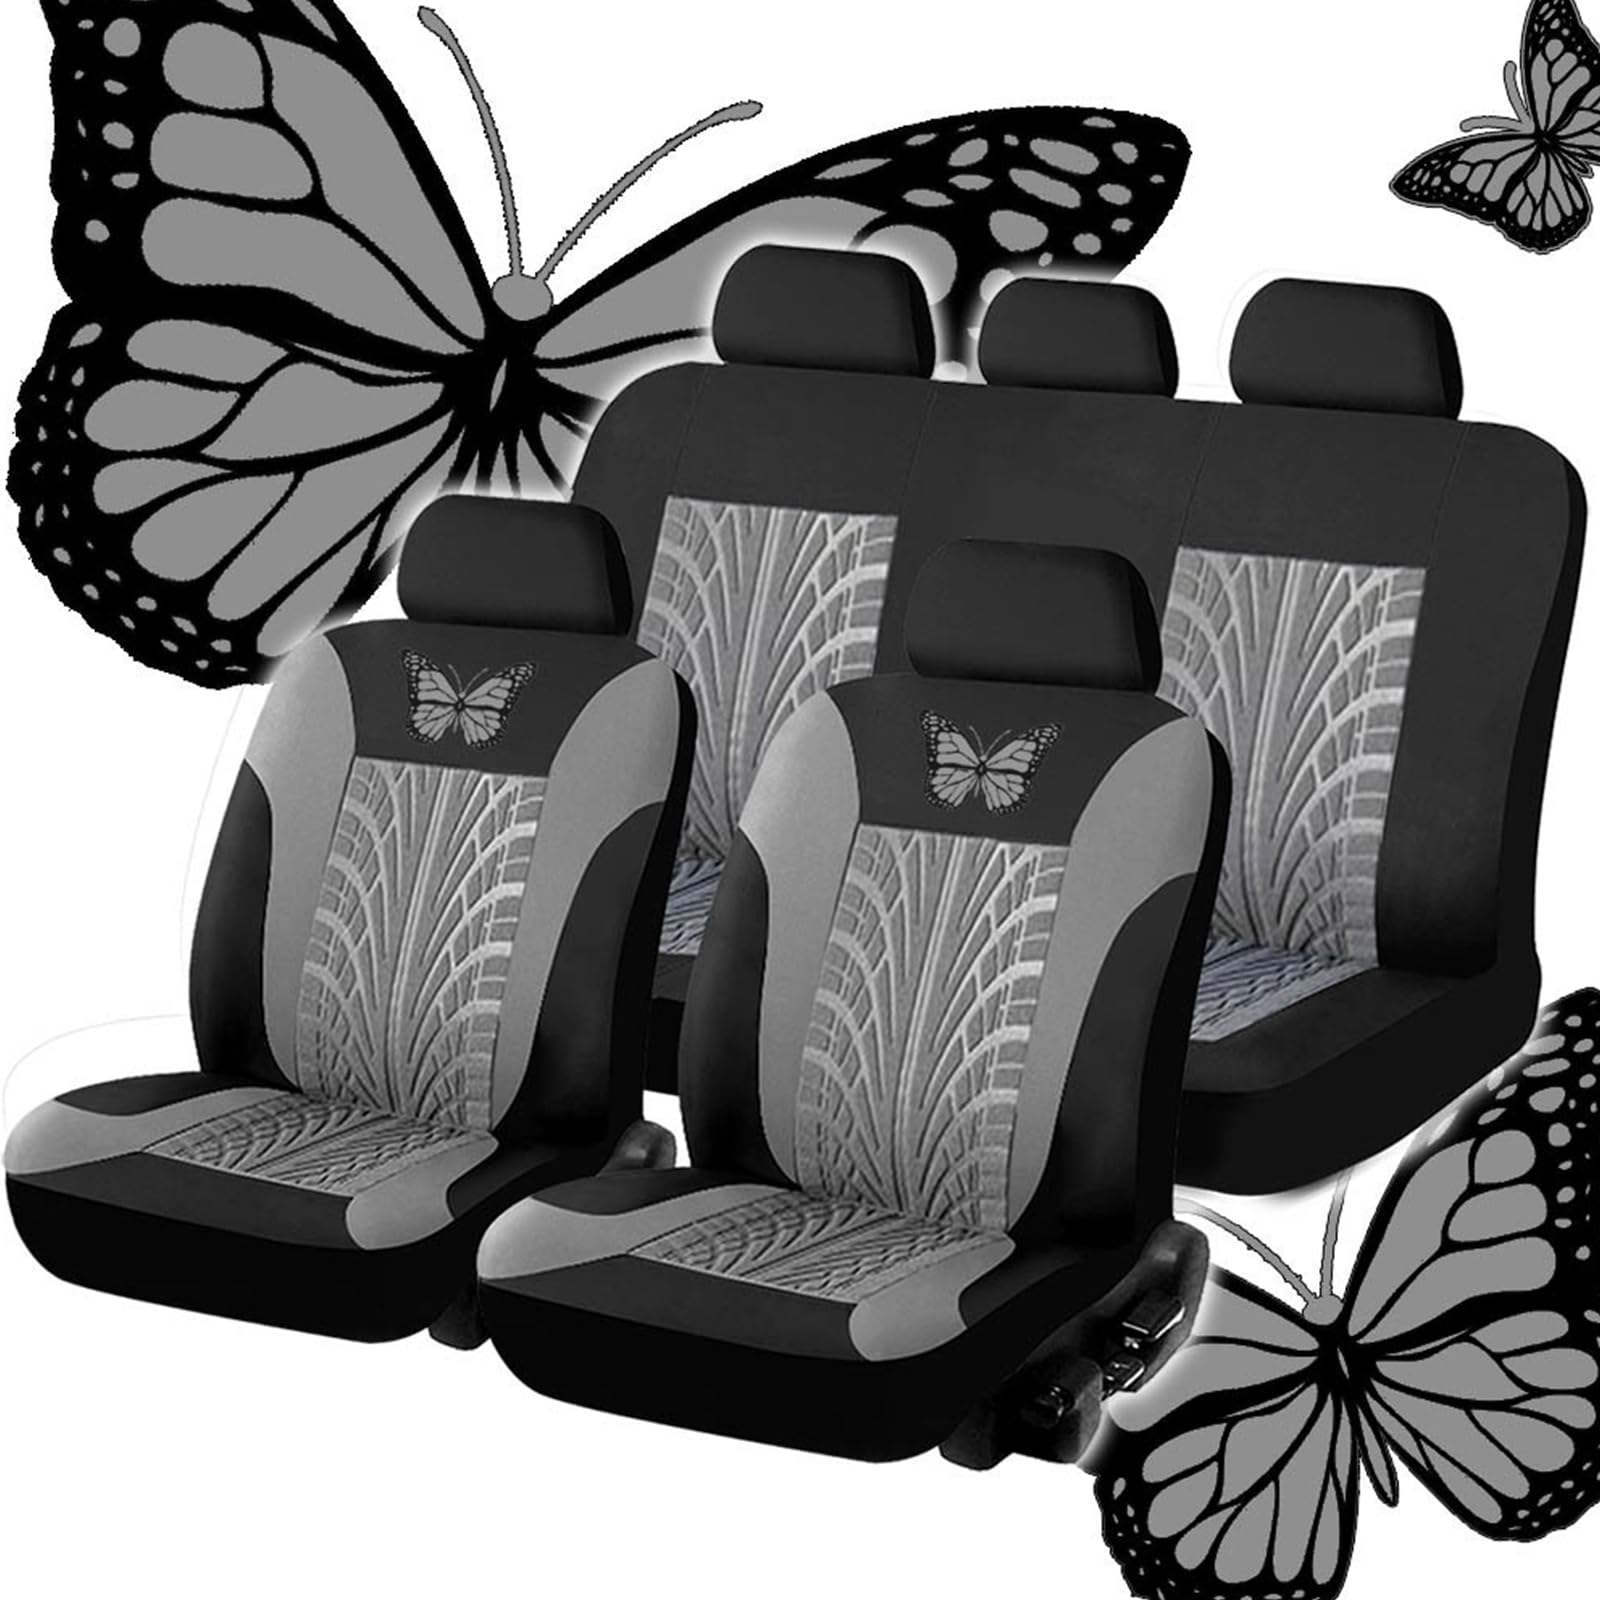 SNXLW 5 Sitzplätze Universal Auto Sitzbezüge Sets für Audi RS4 B9 Avant Wagon 2017-2019 2020 2021 2022 2023 Autositzbezug Vorne Hinten Schonbezüge Innenraum Zubehör,Grey von SNXLW